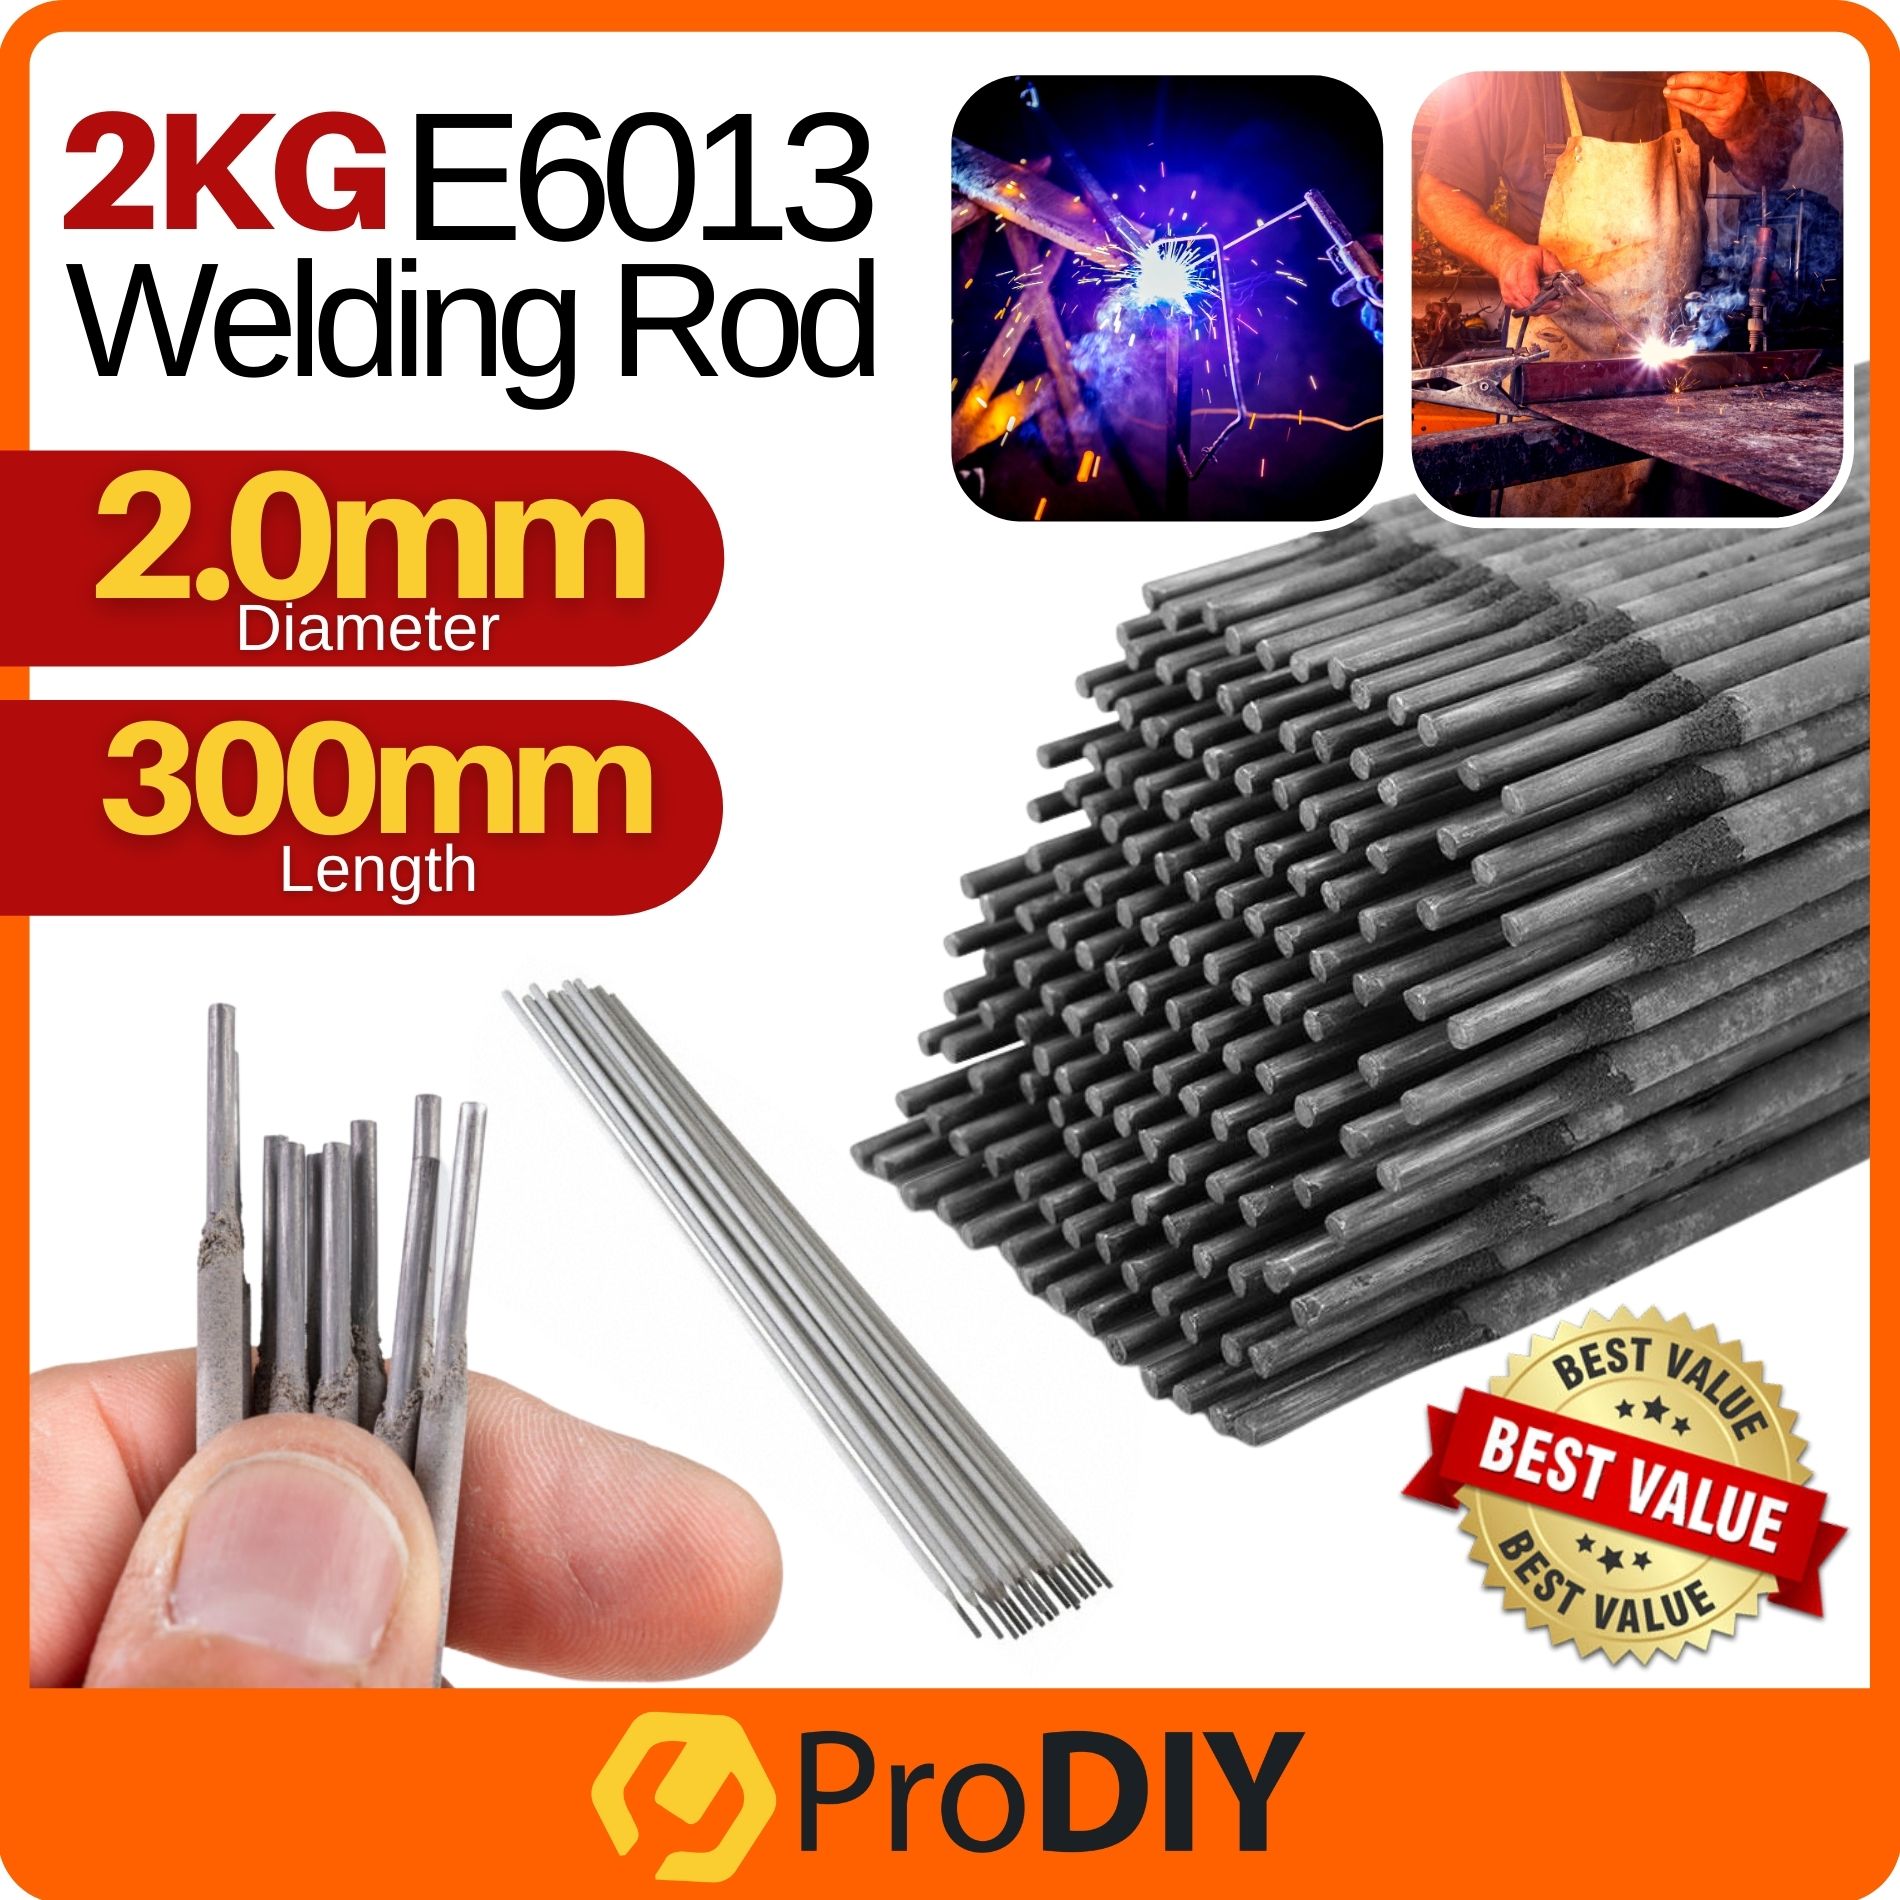 2KG E-6013 2.0mm Welding Electrode Arc Welding Rod Welding Sticks Batang Gimpalan Kimpalan ( 2.0mm x 300mm )